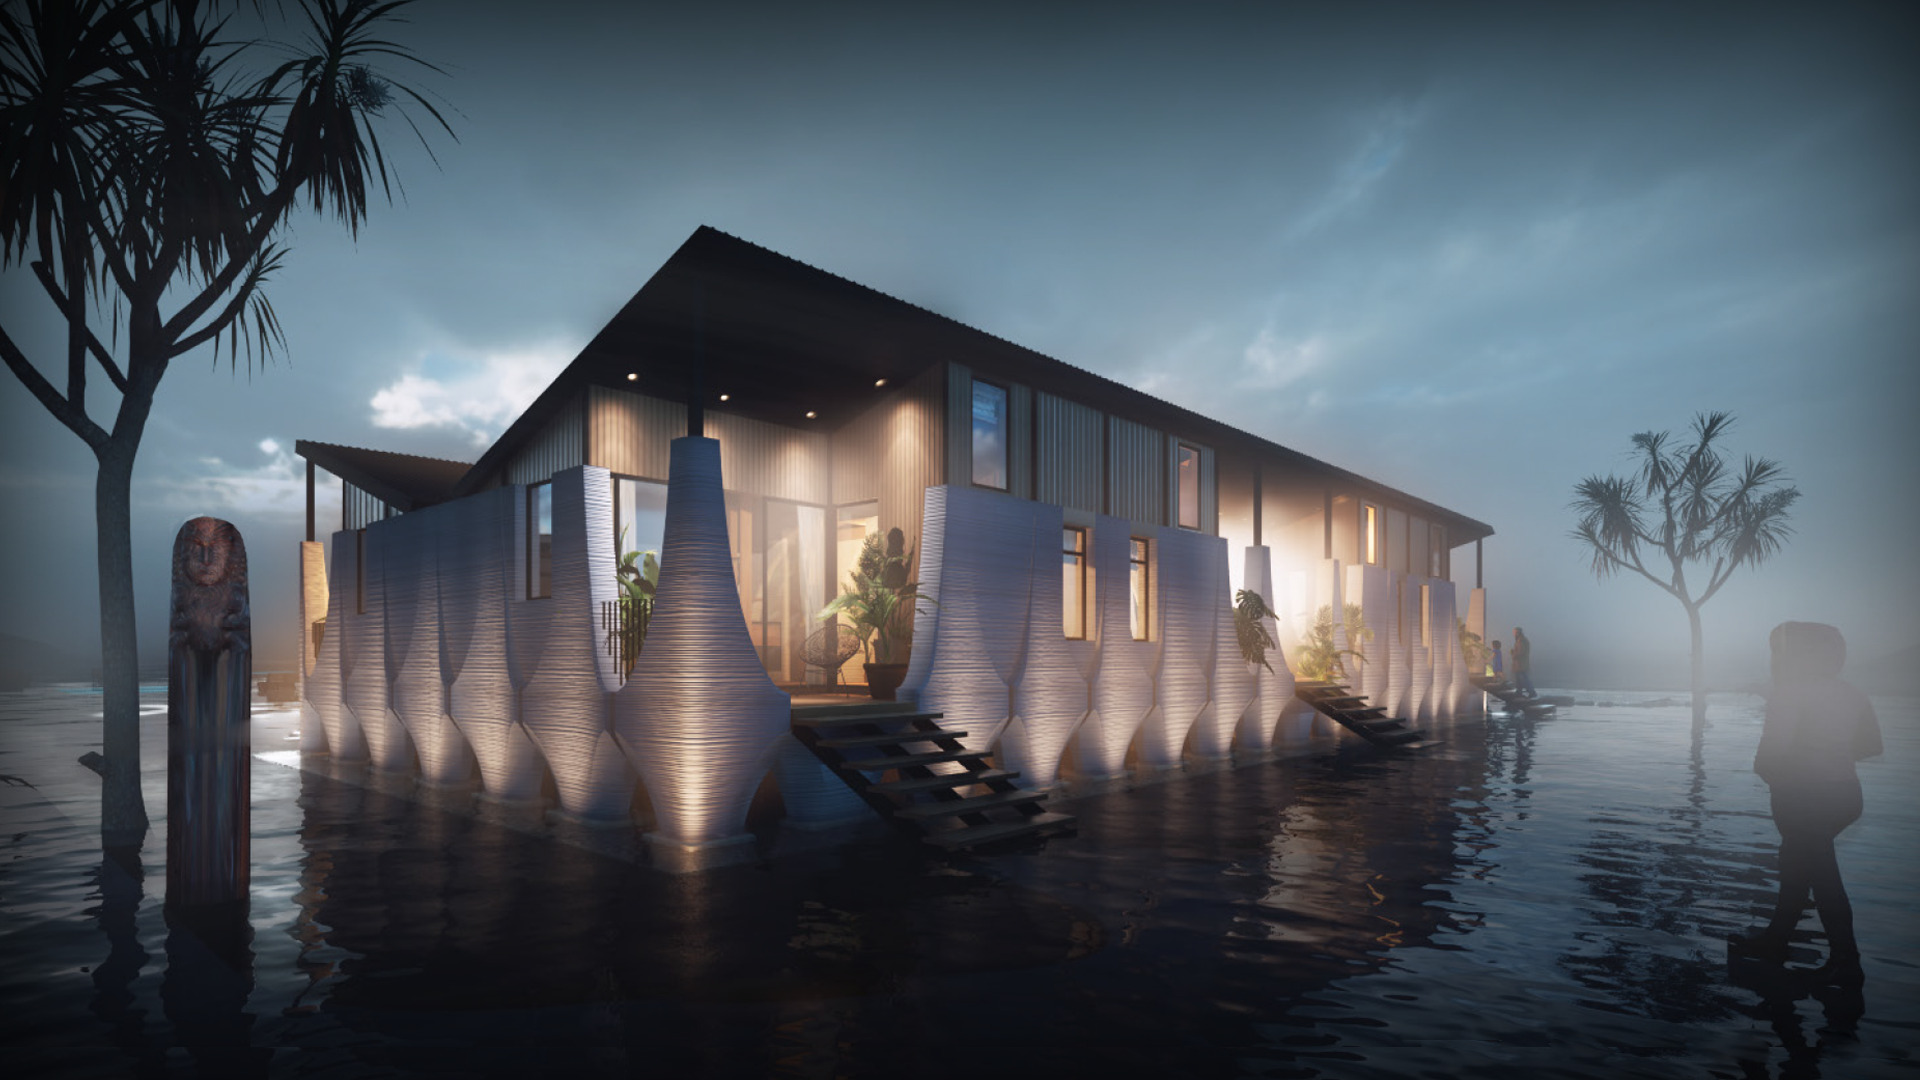 Студия MTspace проектирует напечатанные на 3D-принтере дома, устойчивые к наводнениям, для конкурса ICON Initiative99